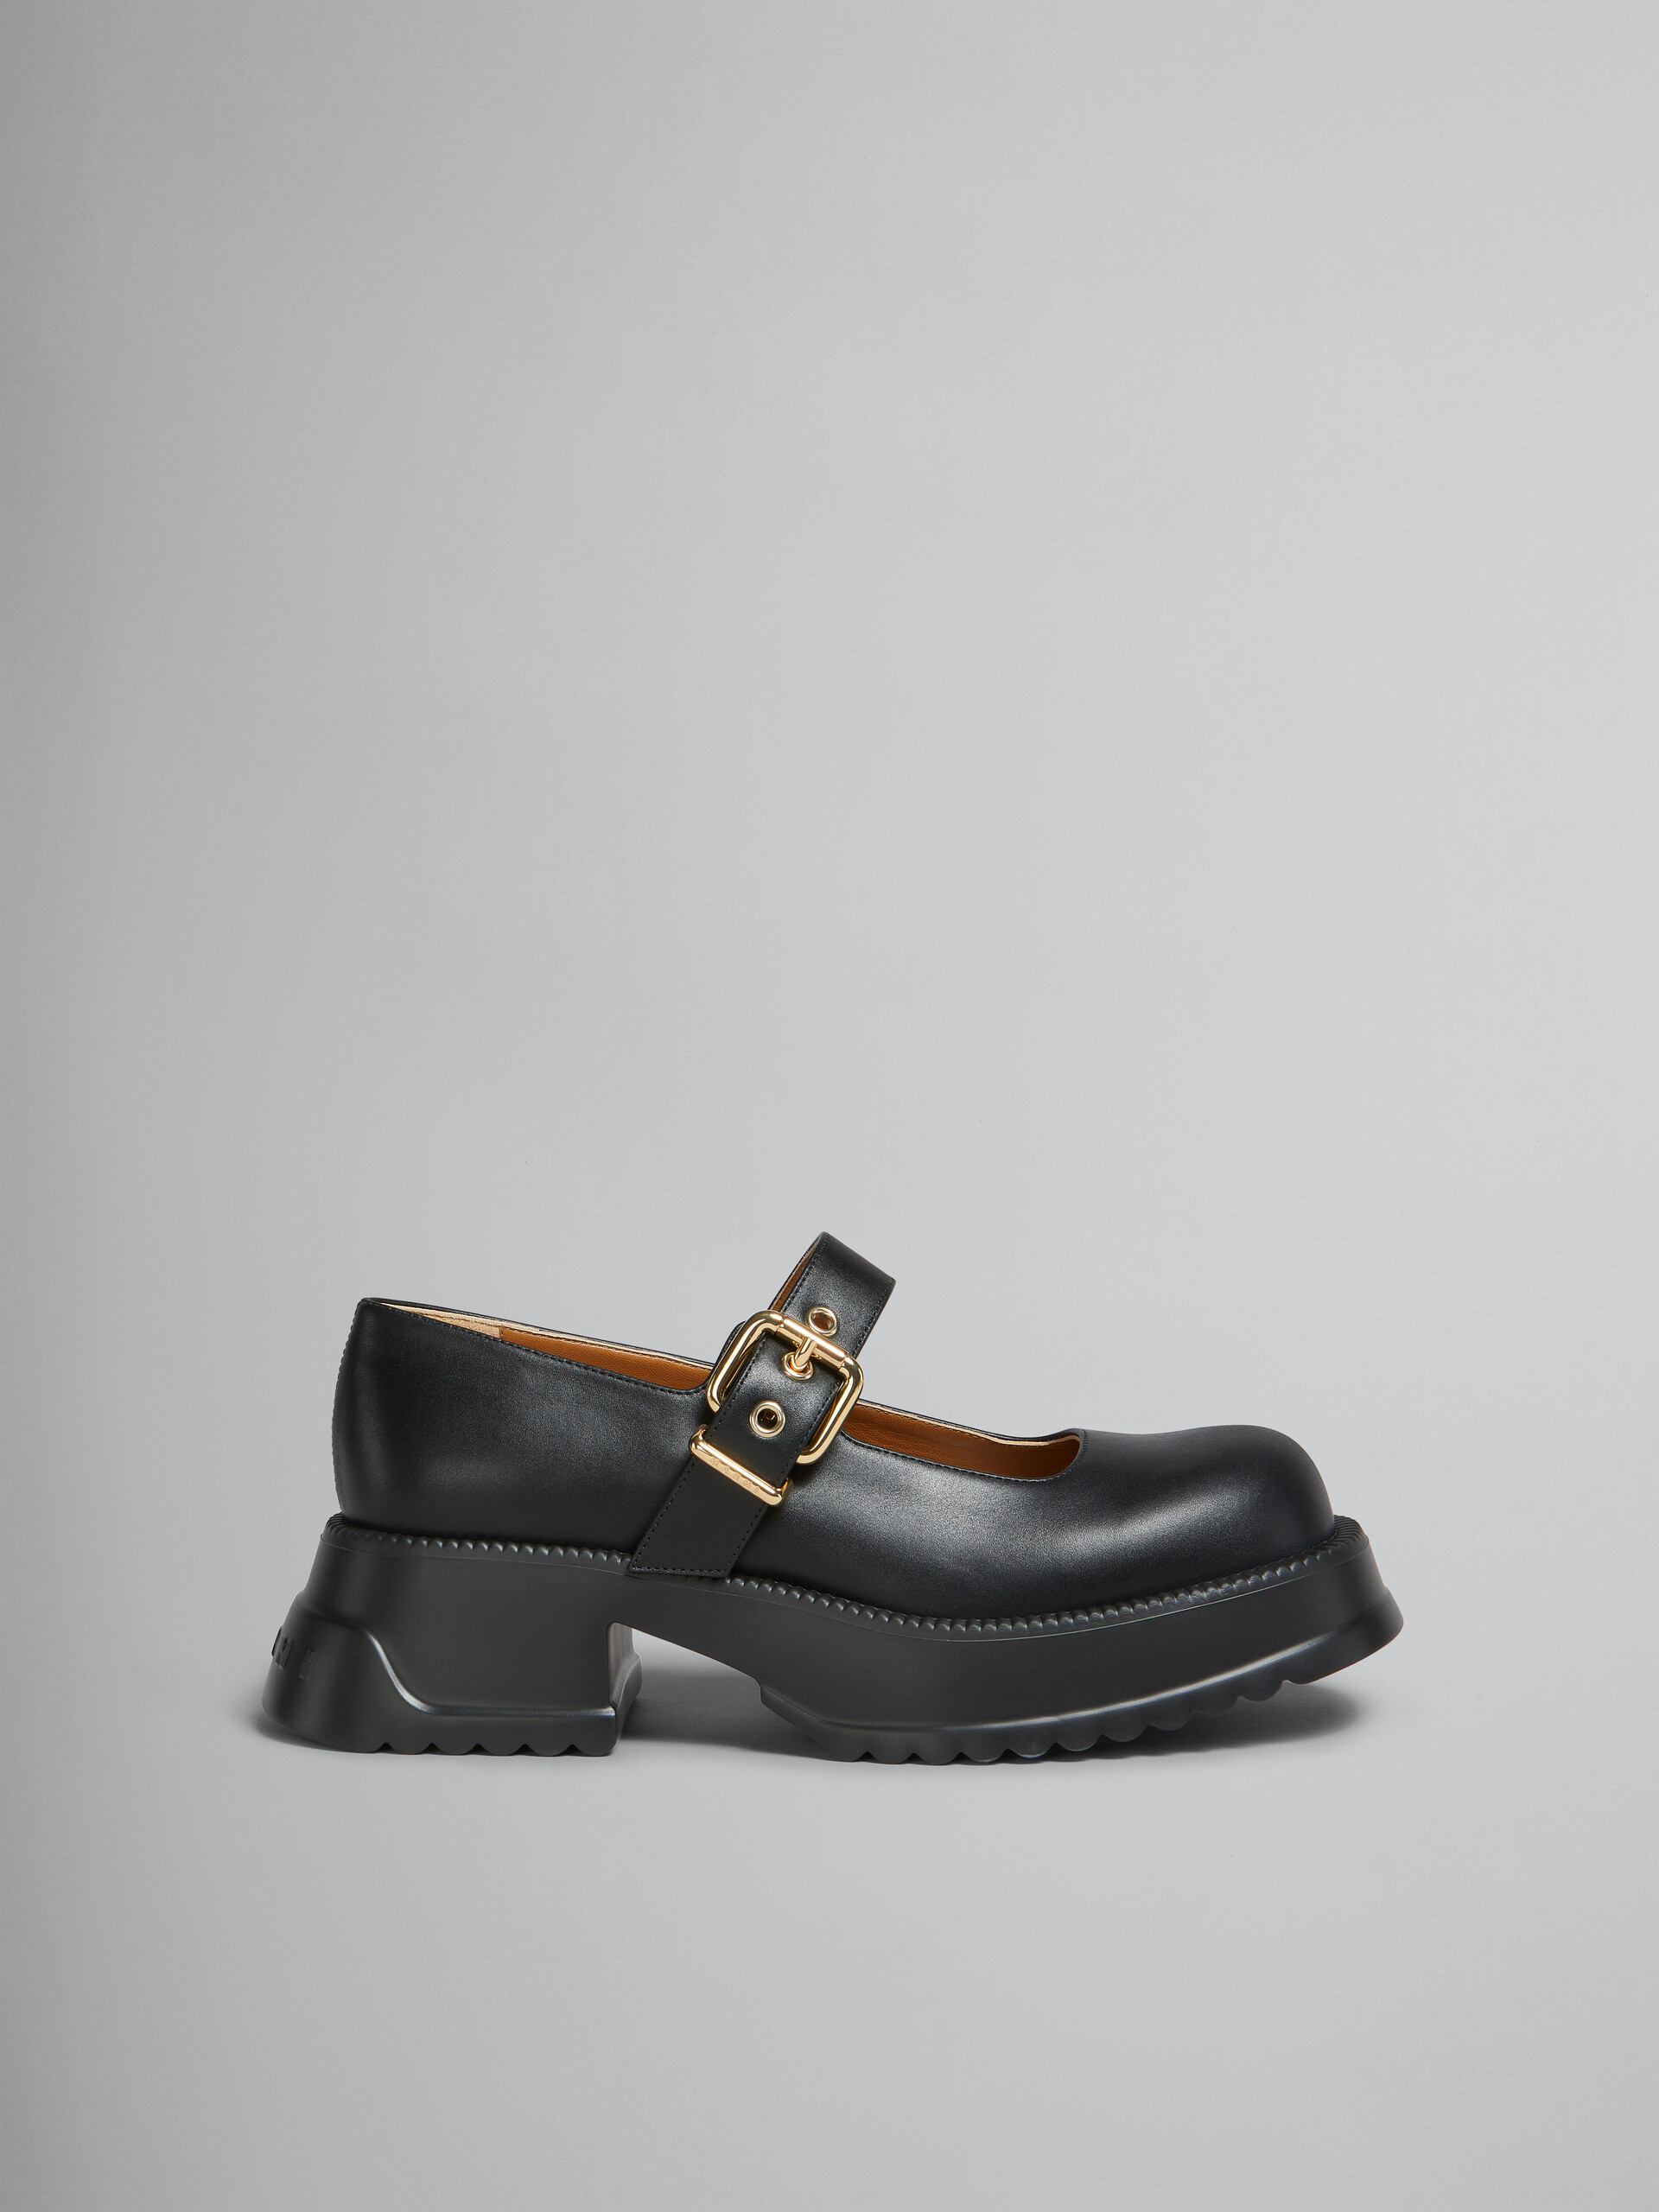 Chaussures Mary Jane en cuir noir avec semelle à plateforme - Sneakers - Image 1